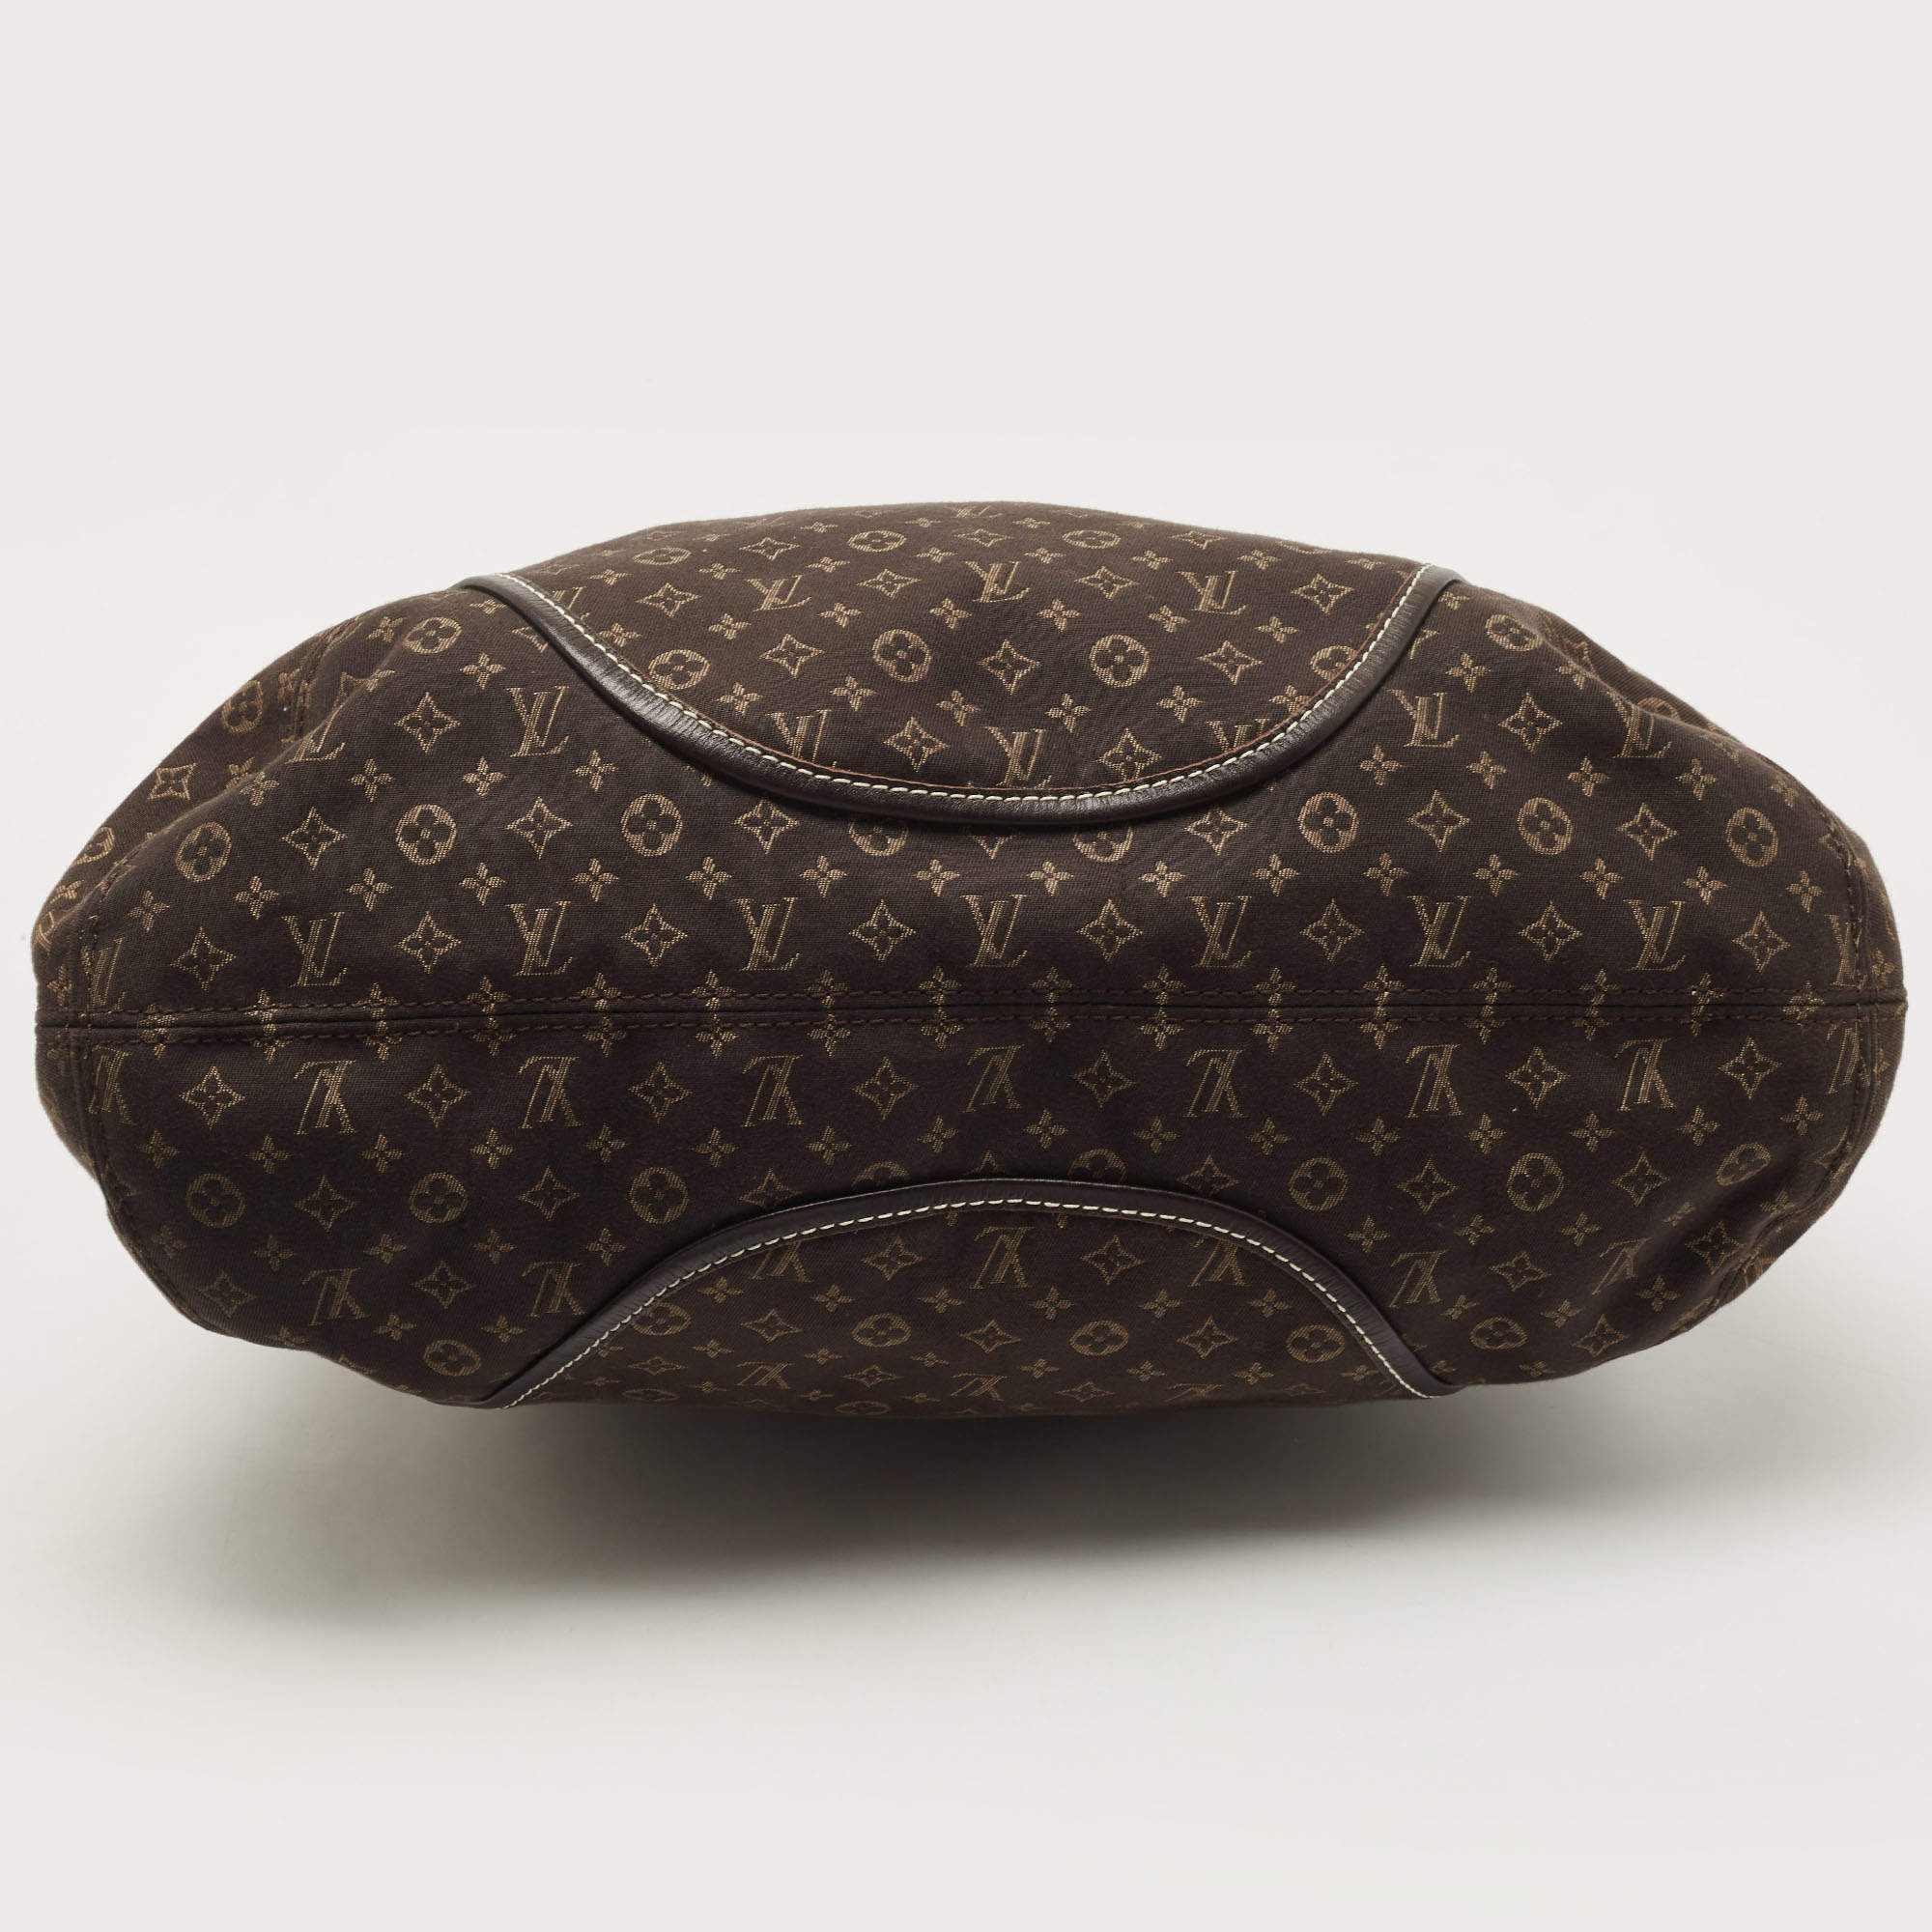 Authentic Louis Vuitton Fusain Monogram Idylle Canvas Elegie Bag